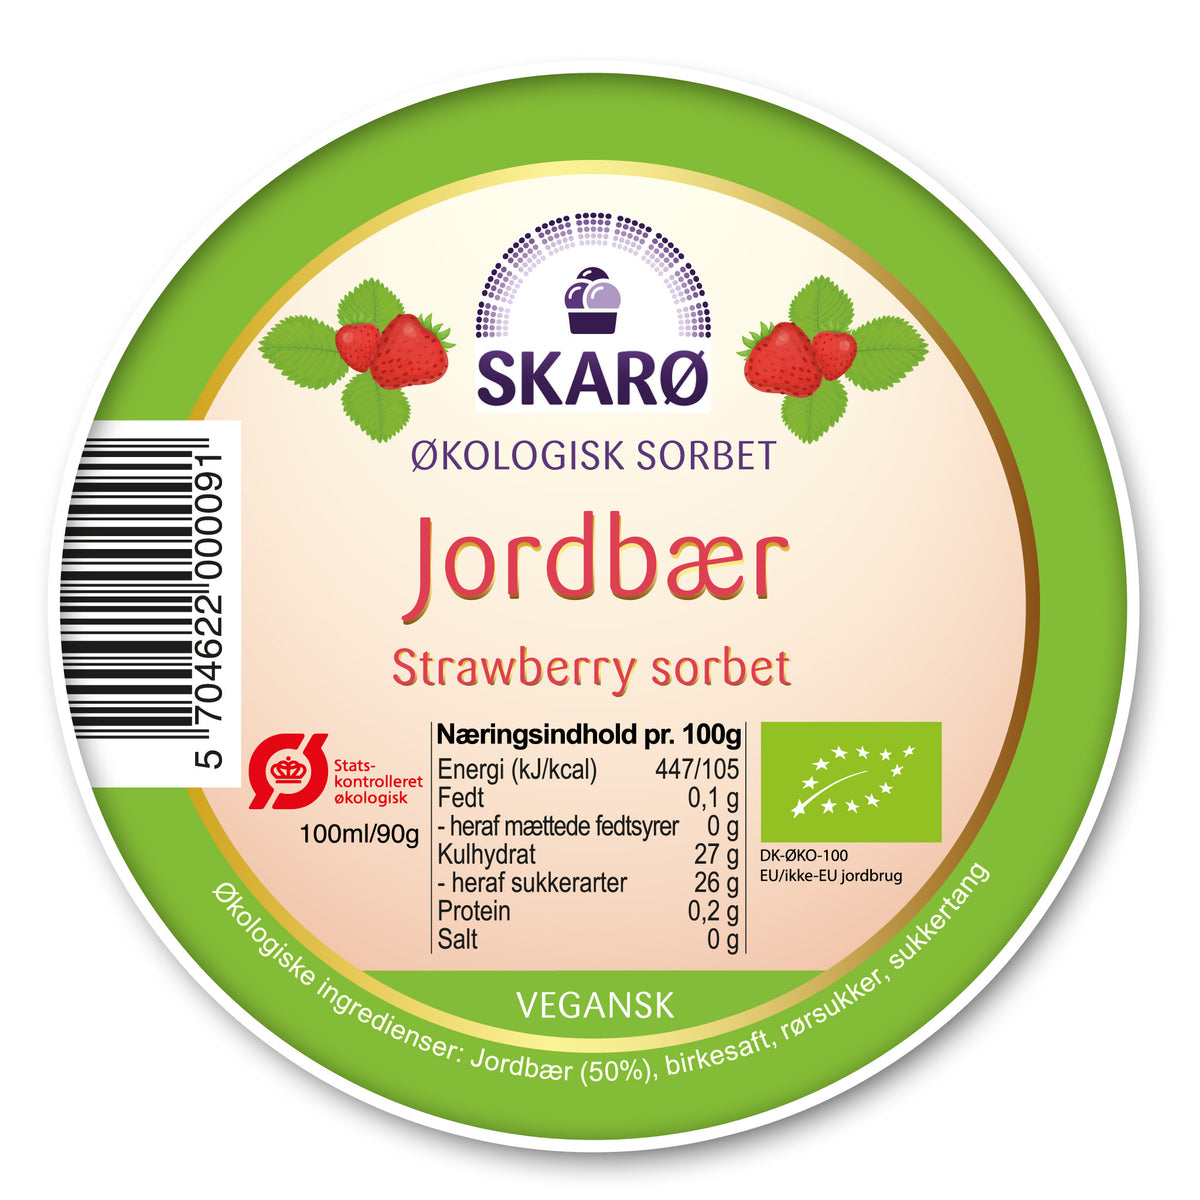 Økologisk vegansk sorbet med Jordbær - is fra Skarø